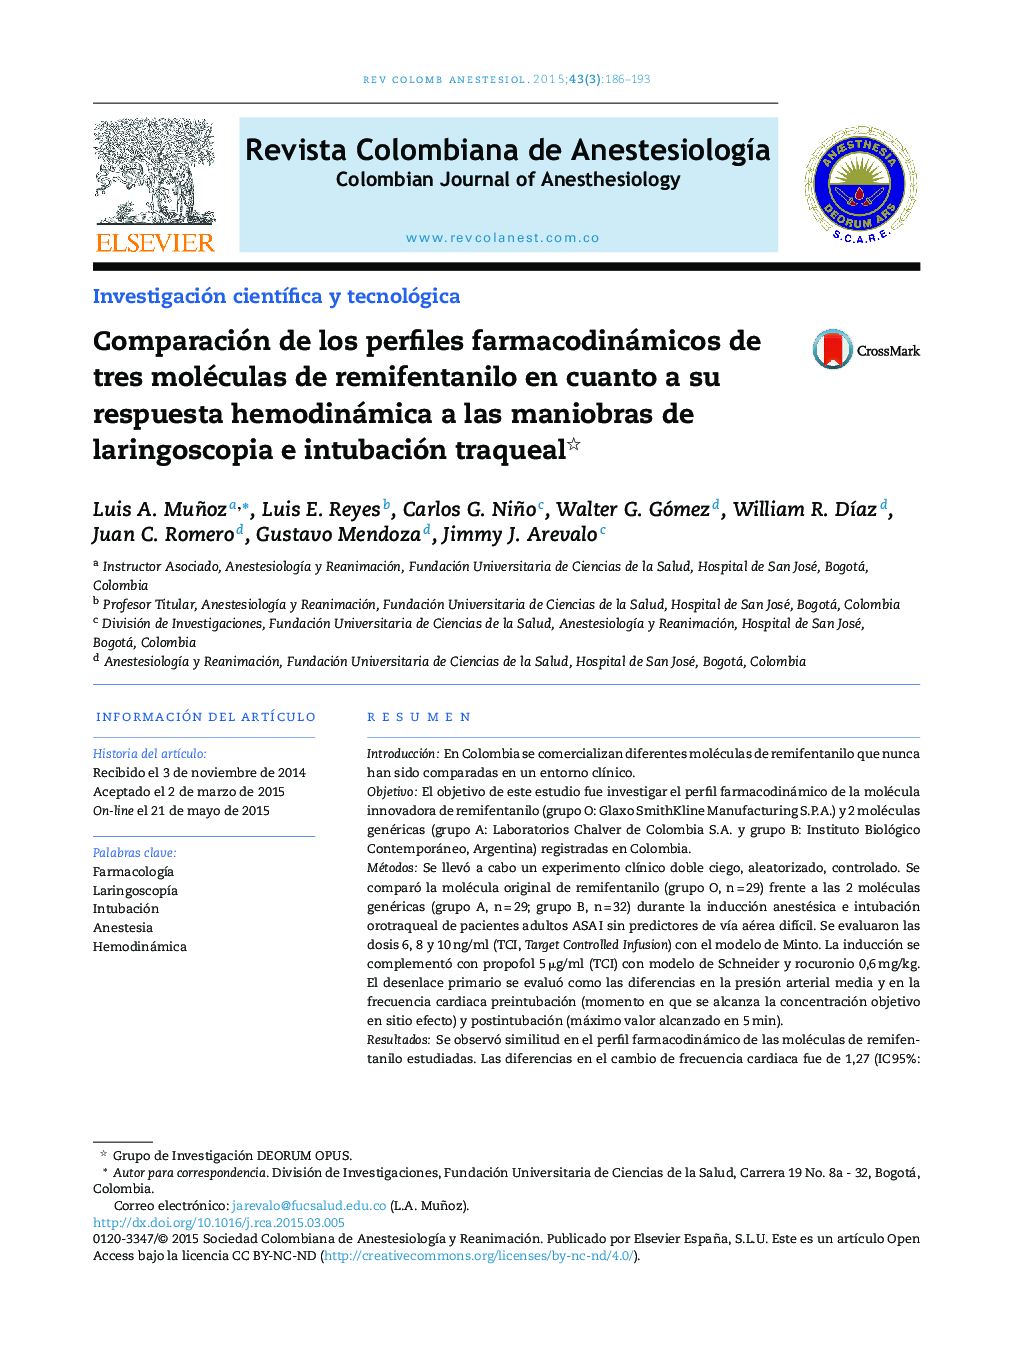 Comparación de los perfiles farmacodinámicos de tres moléculas de remifentanilo en cuanto a su respuesta hemodinámica a las maniobras de laringoscopia e intubación traqueal 